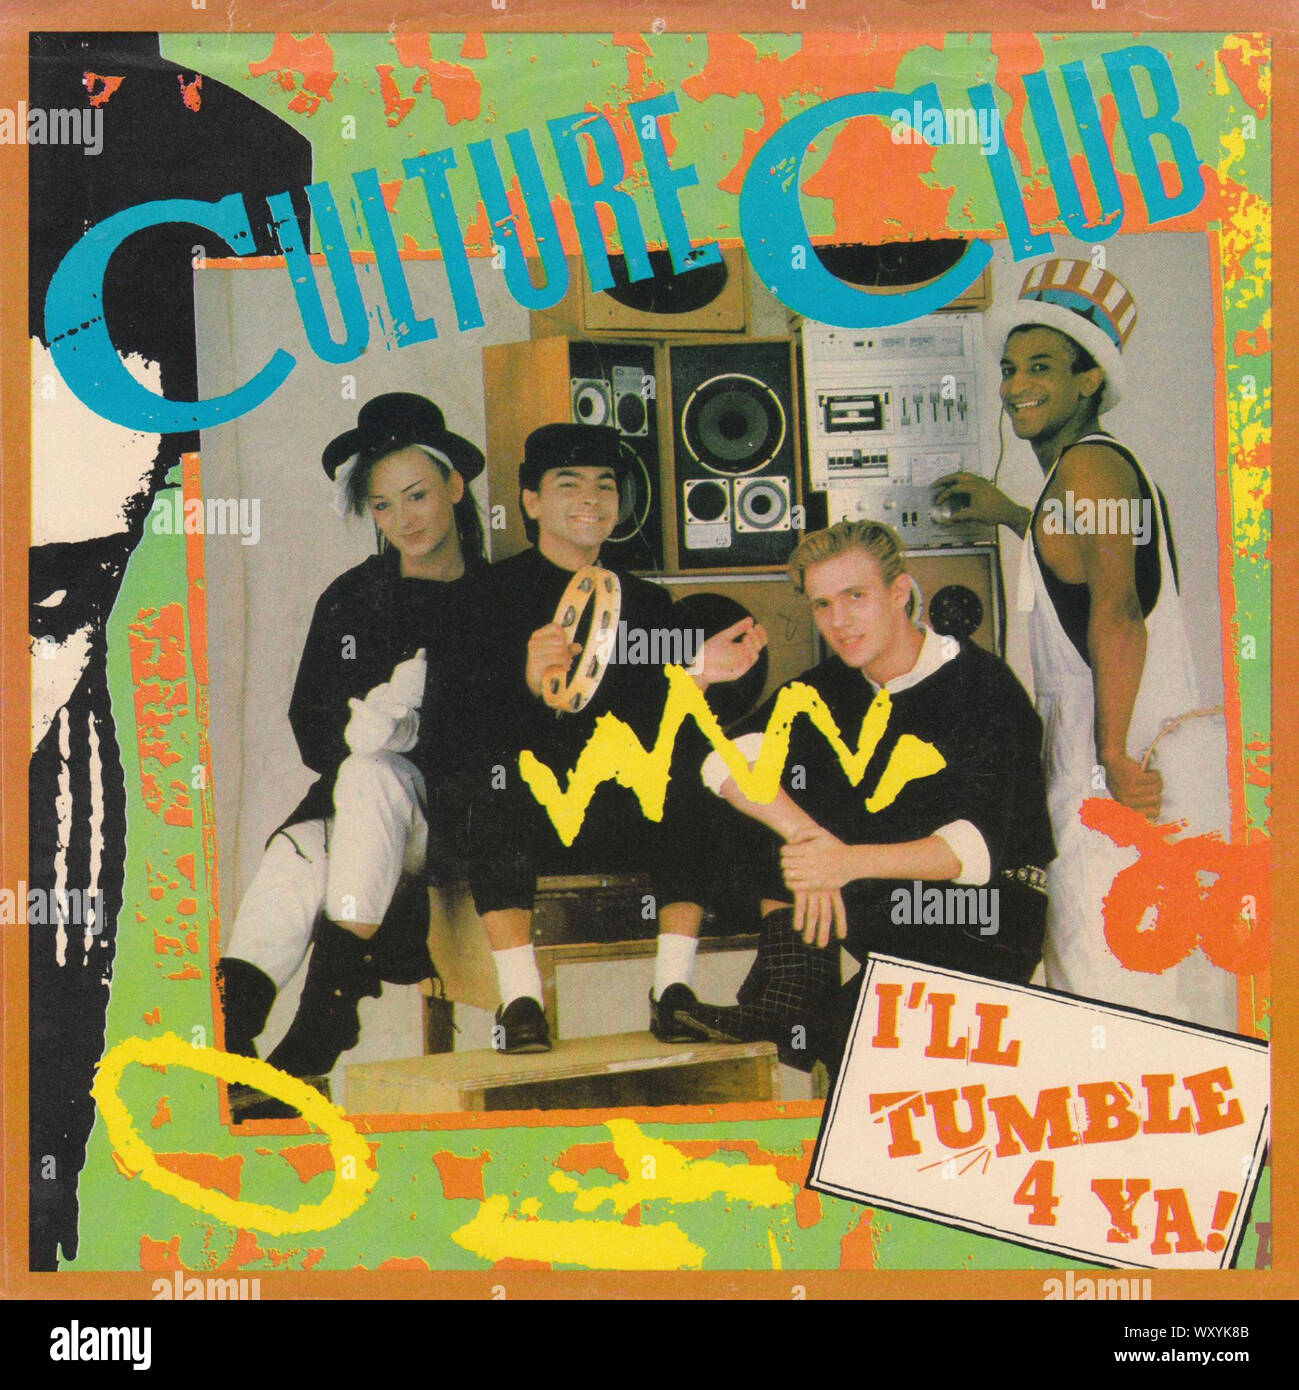 Culture Club - Mauvais sèche 4 Ya - Vintage 7'' pouces notice couvrir Banque D'Images